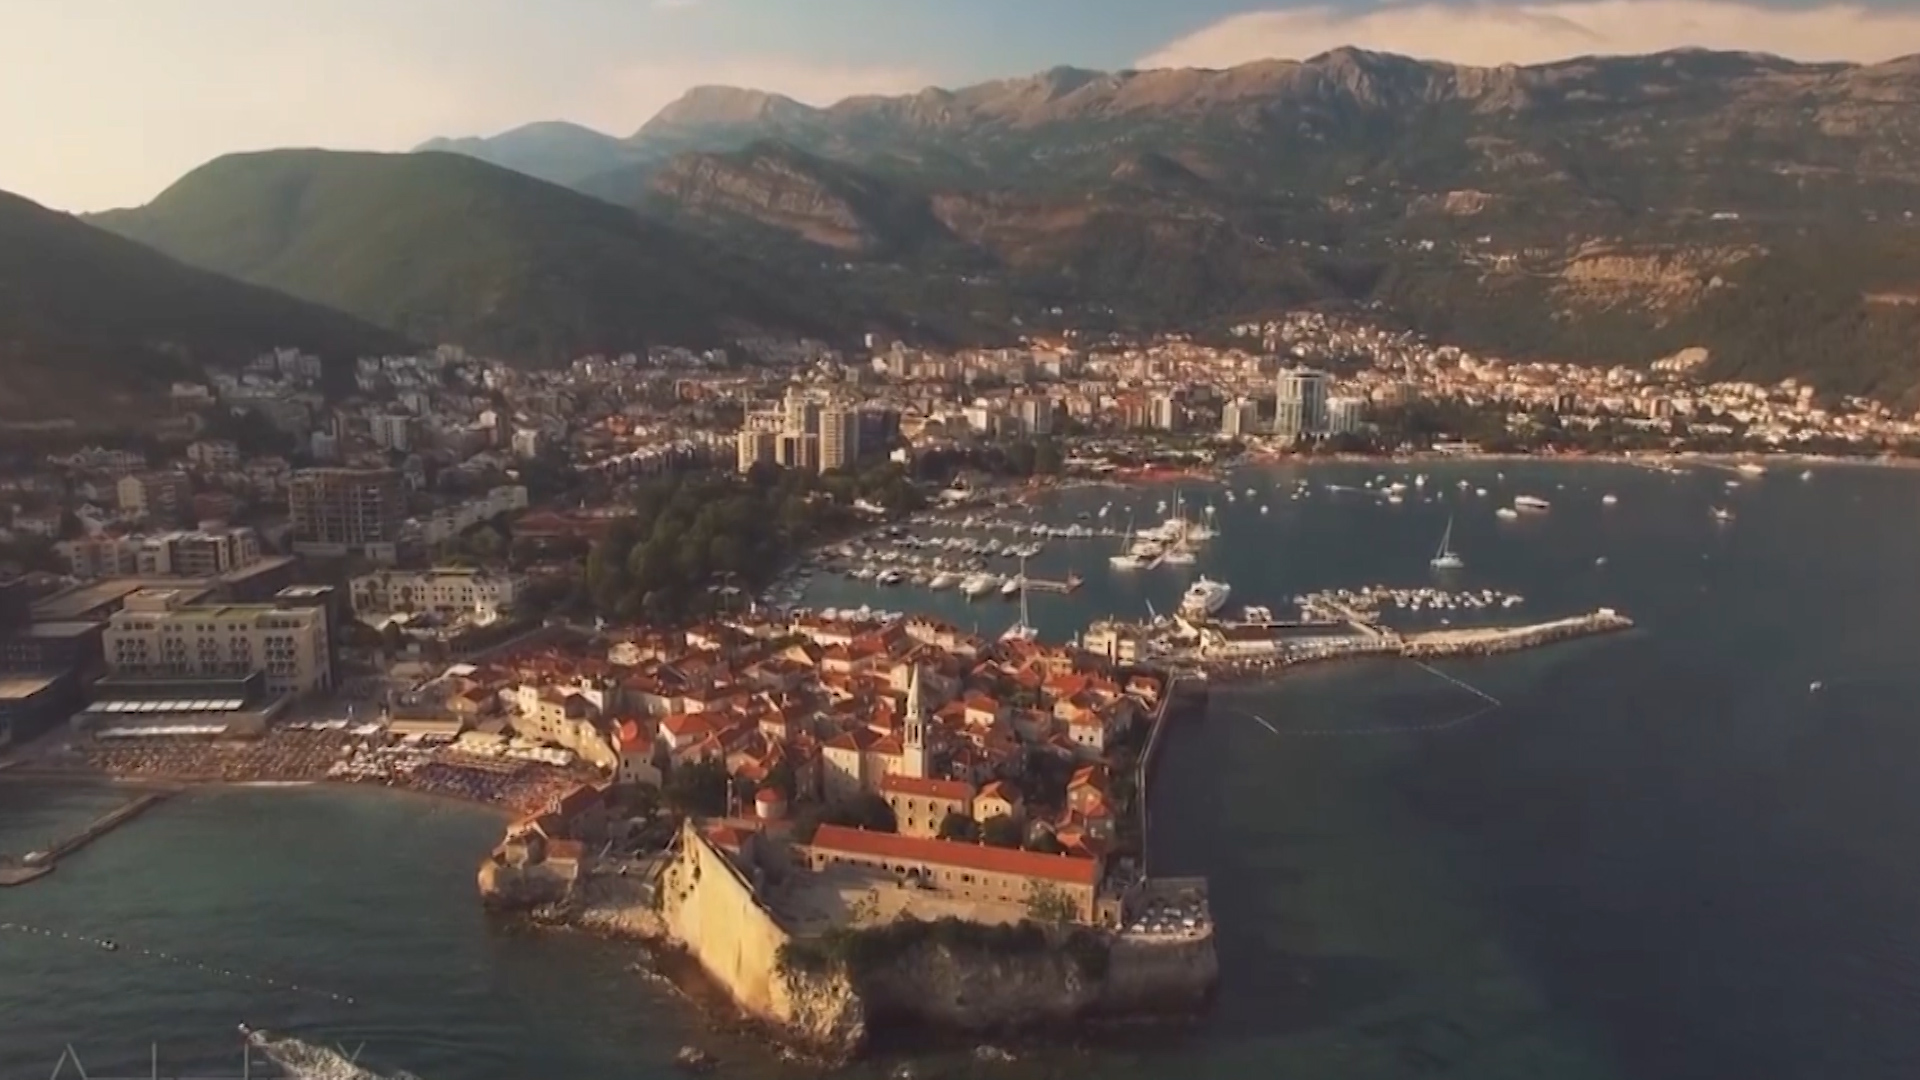 Thành phố cổ Kotor, thuộc Cộng hòa Montenegro là một trong những đô thị thời Trung cổ được bảo tồn tốt nhất trên thế giới và được UNESCO công nhận là di sản của nhân loại.